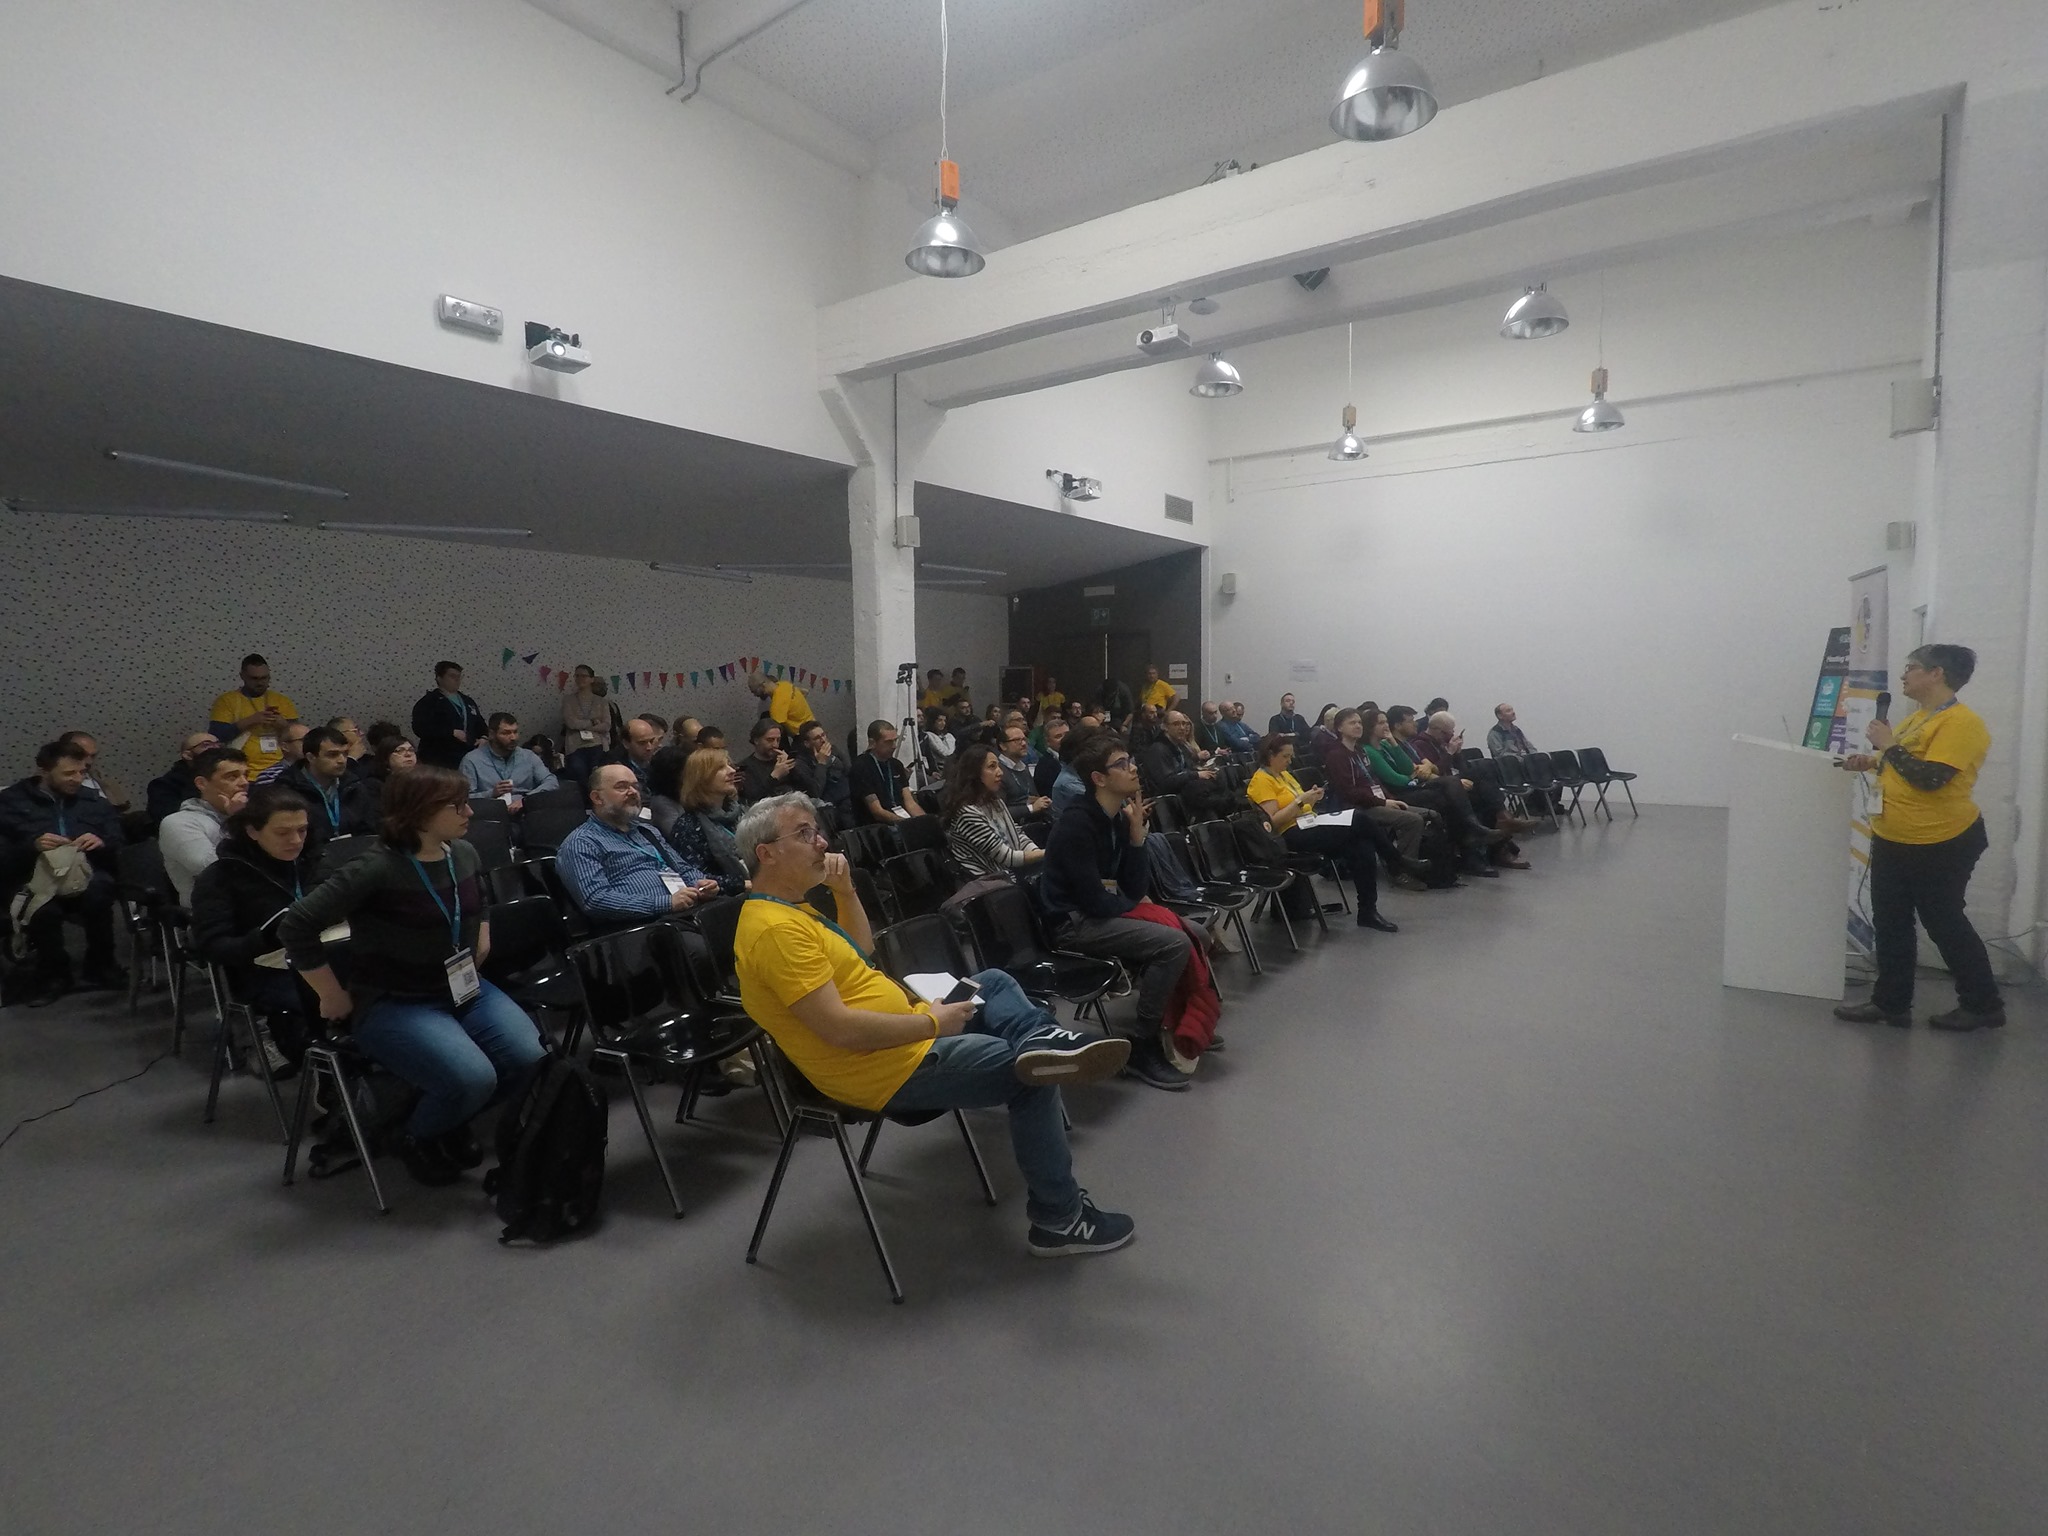 Che cos'è un WordCamp? - Sala conferenze gremita di persone durante WordCamp Torino 2019